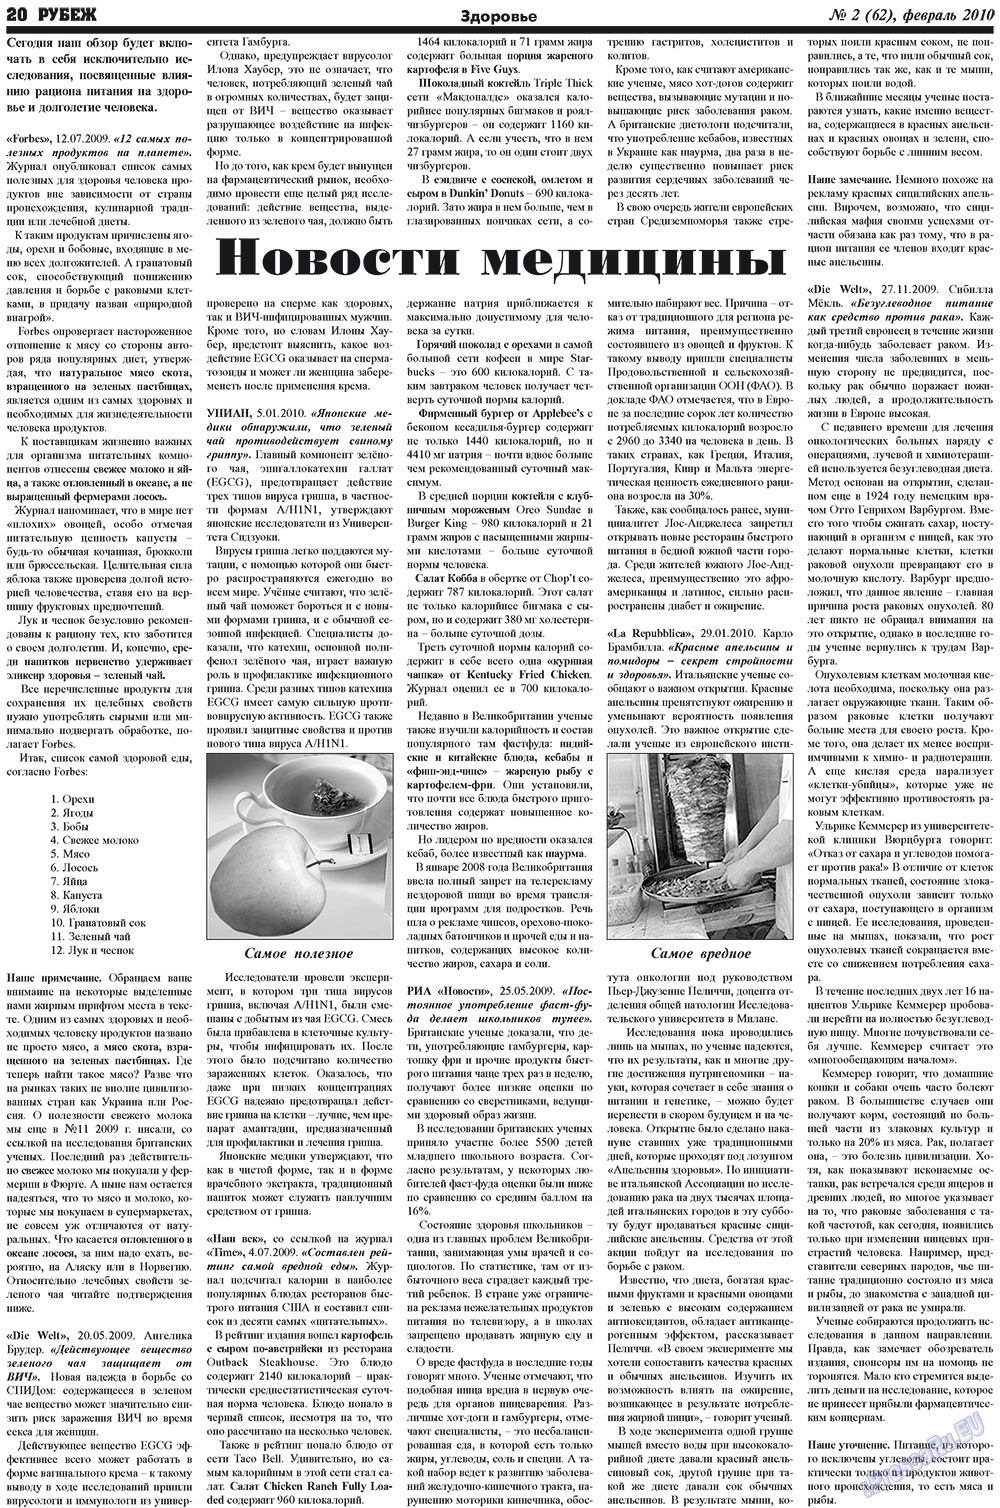 Рубеж (газета). 2010 год, номер 2, стр. 20